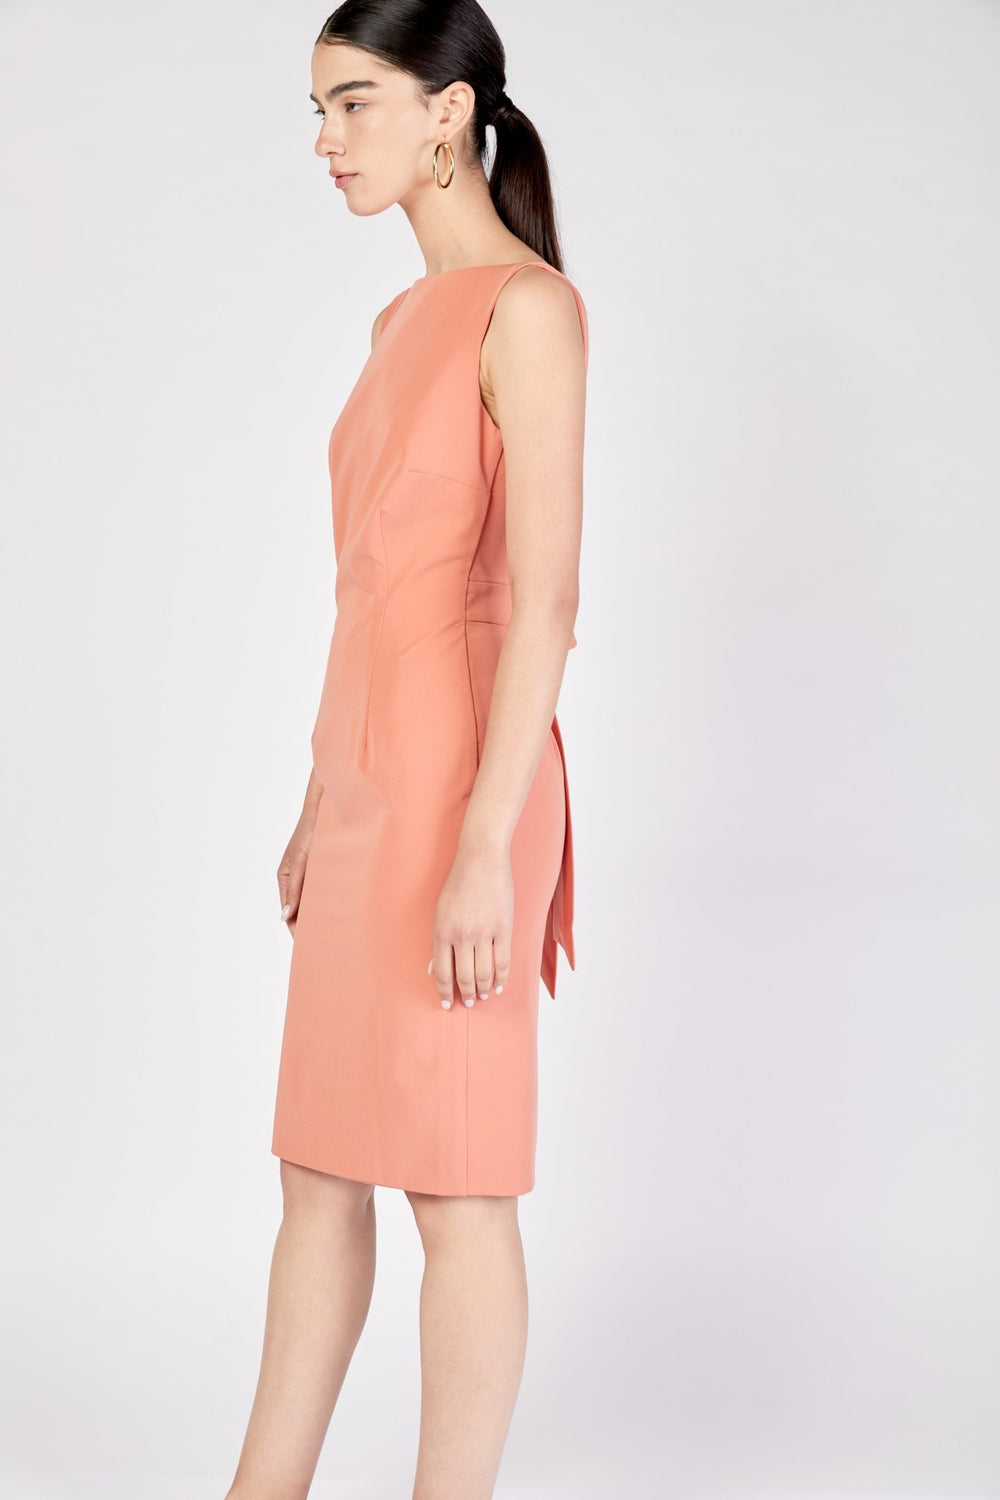 שמלת מיני לאורה בצבע אפרסק - Moi Collection